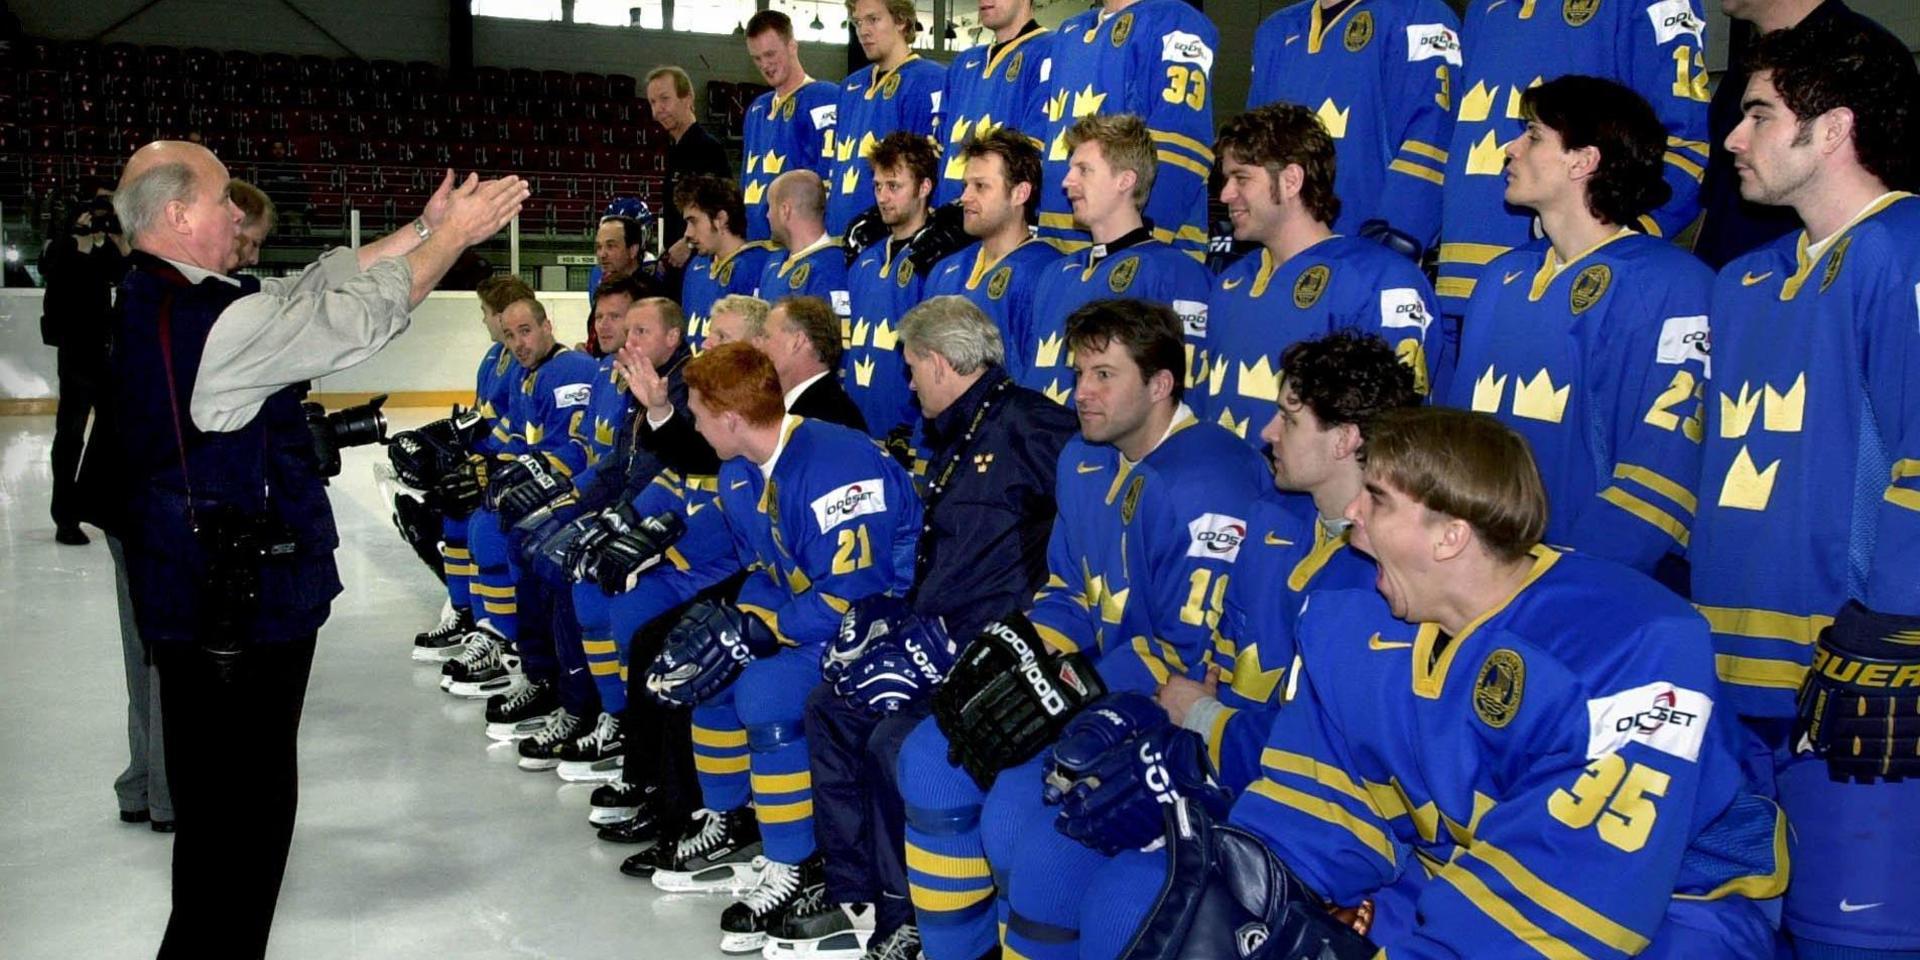 Fotograf Jan Düsing försöker få ordning i den svenska truppen vid VM i ishockey 2001.